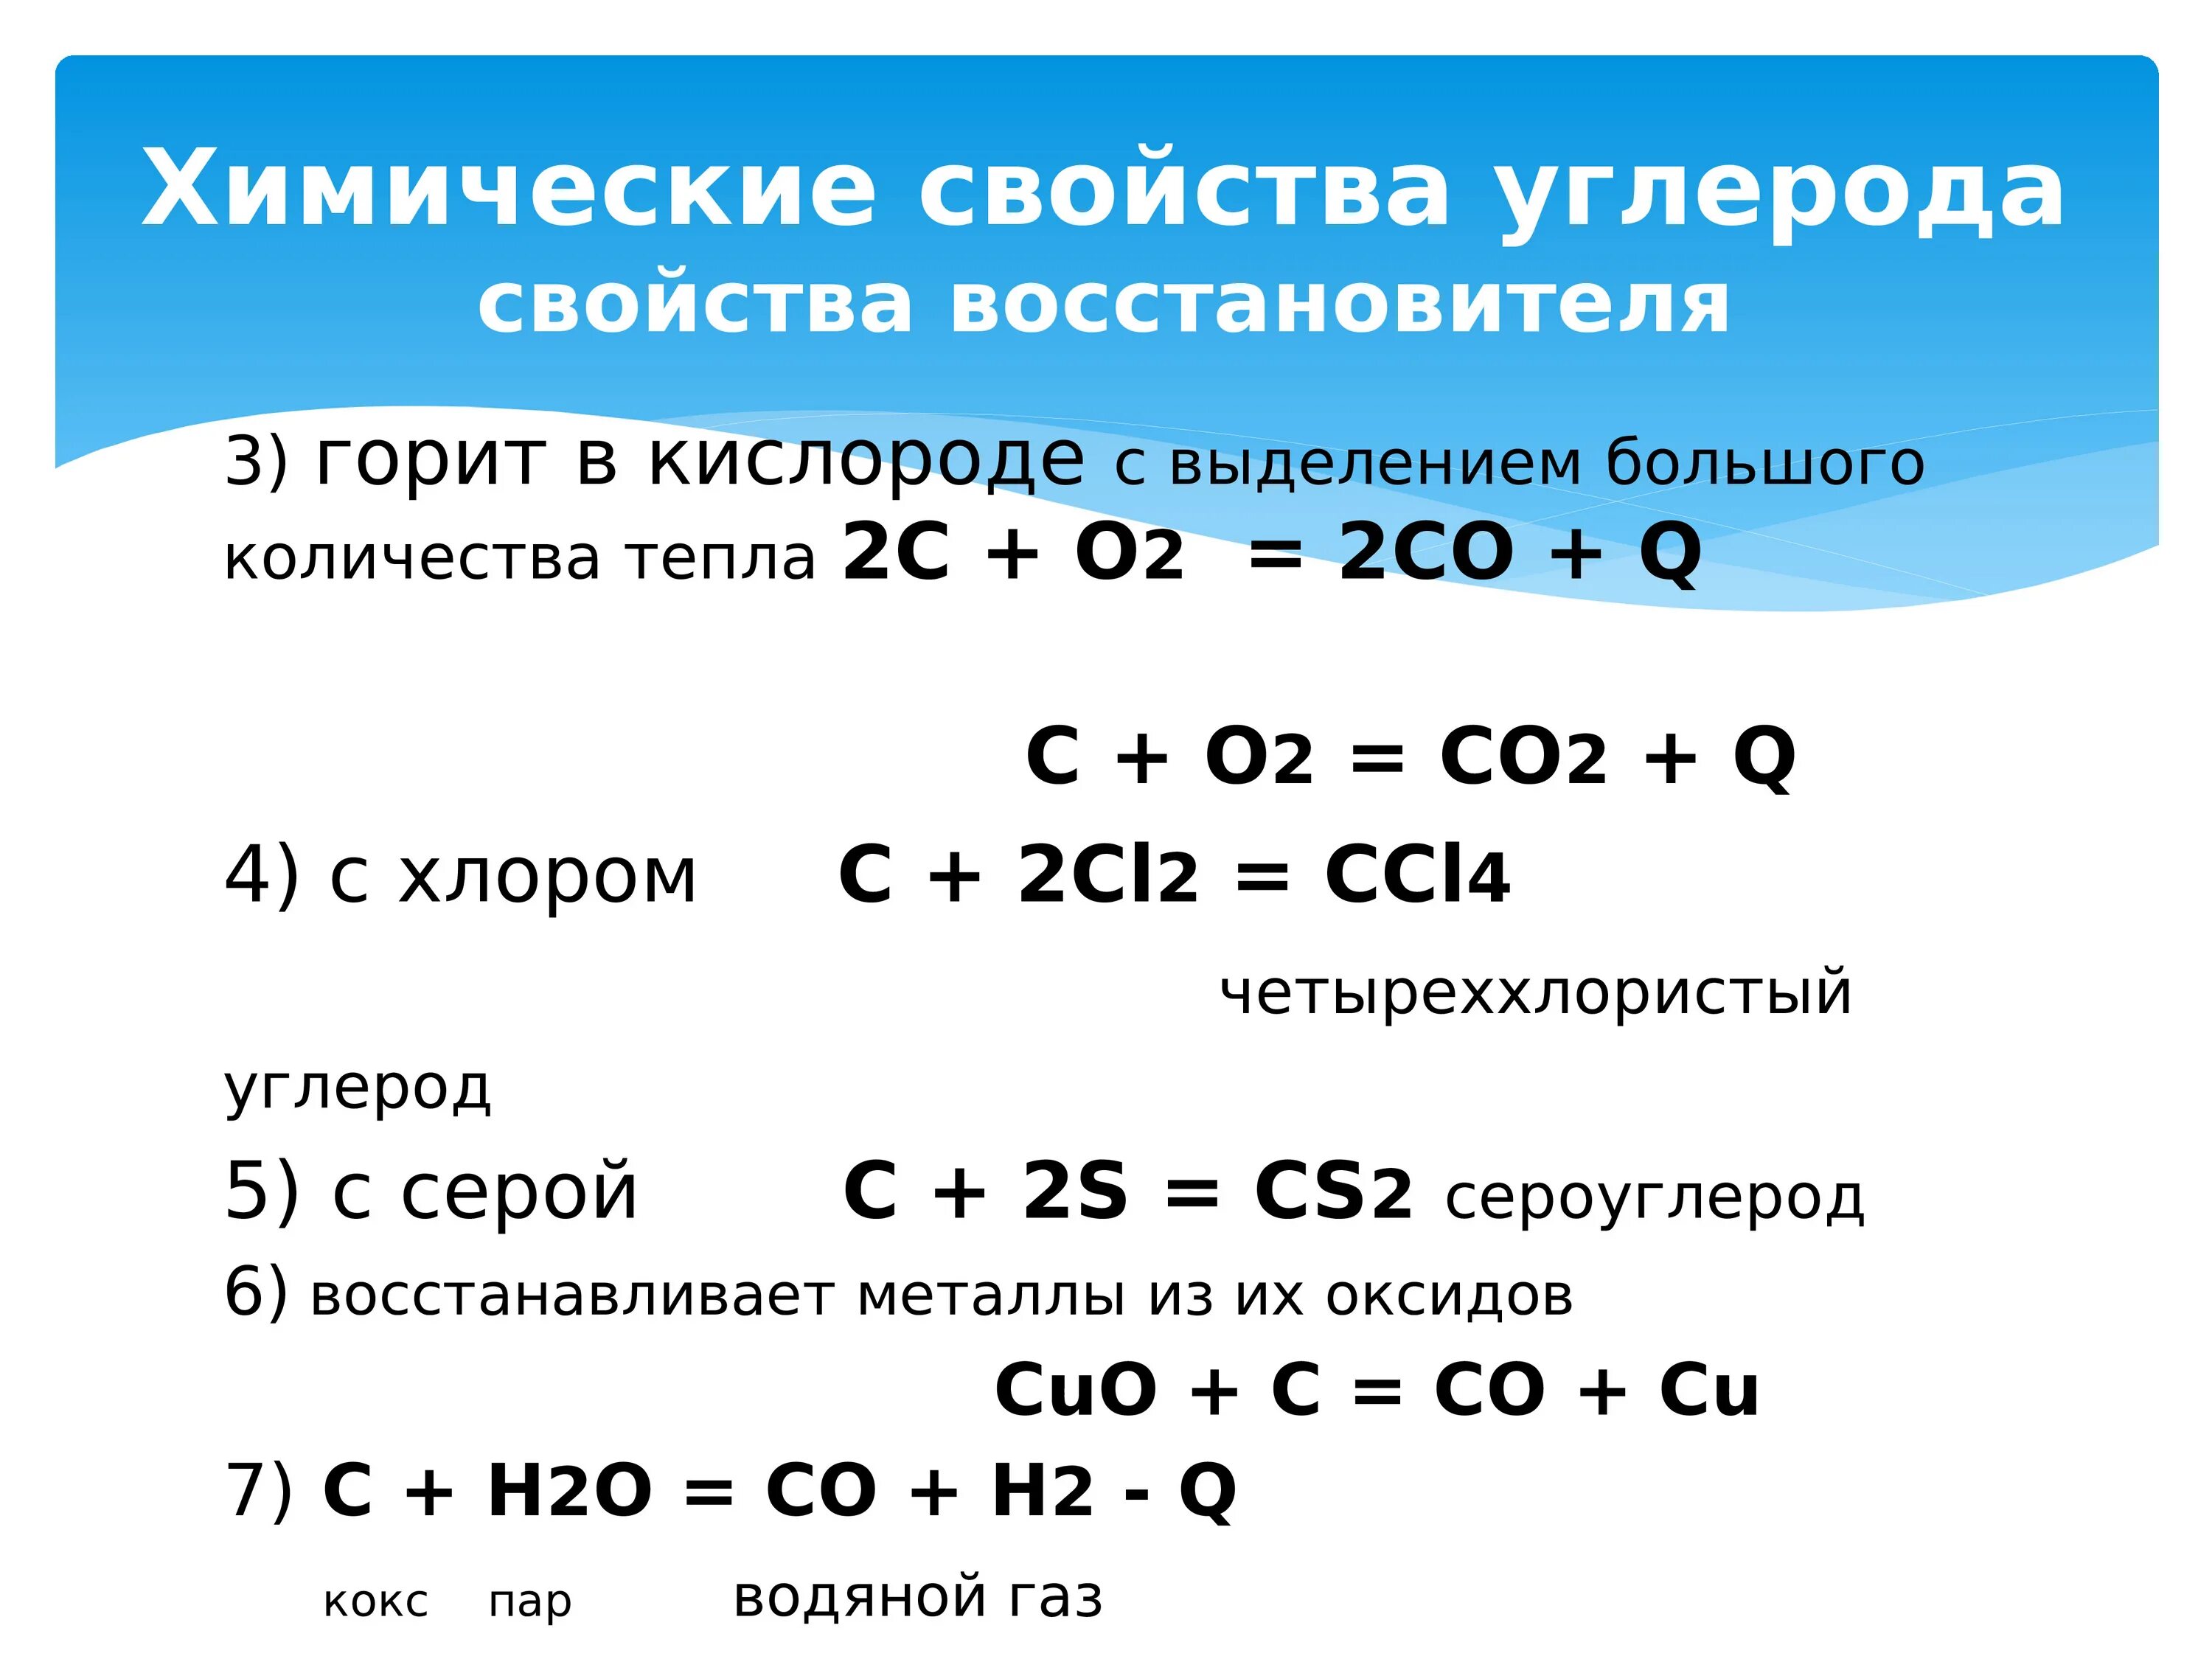 Химические свойства углерода реакции. Химические свойства углерода таблица. Химические свойства углерода уравнения. Углерод соединения углерода.